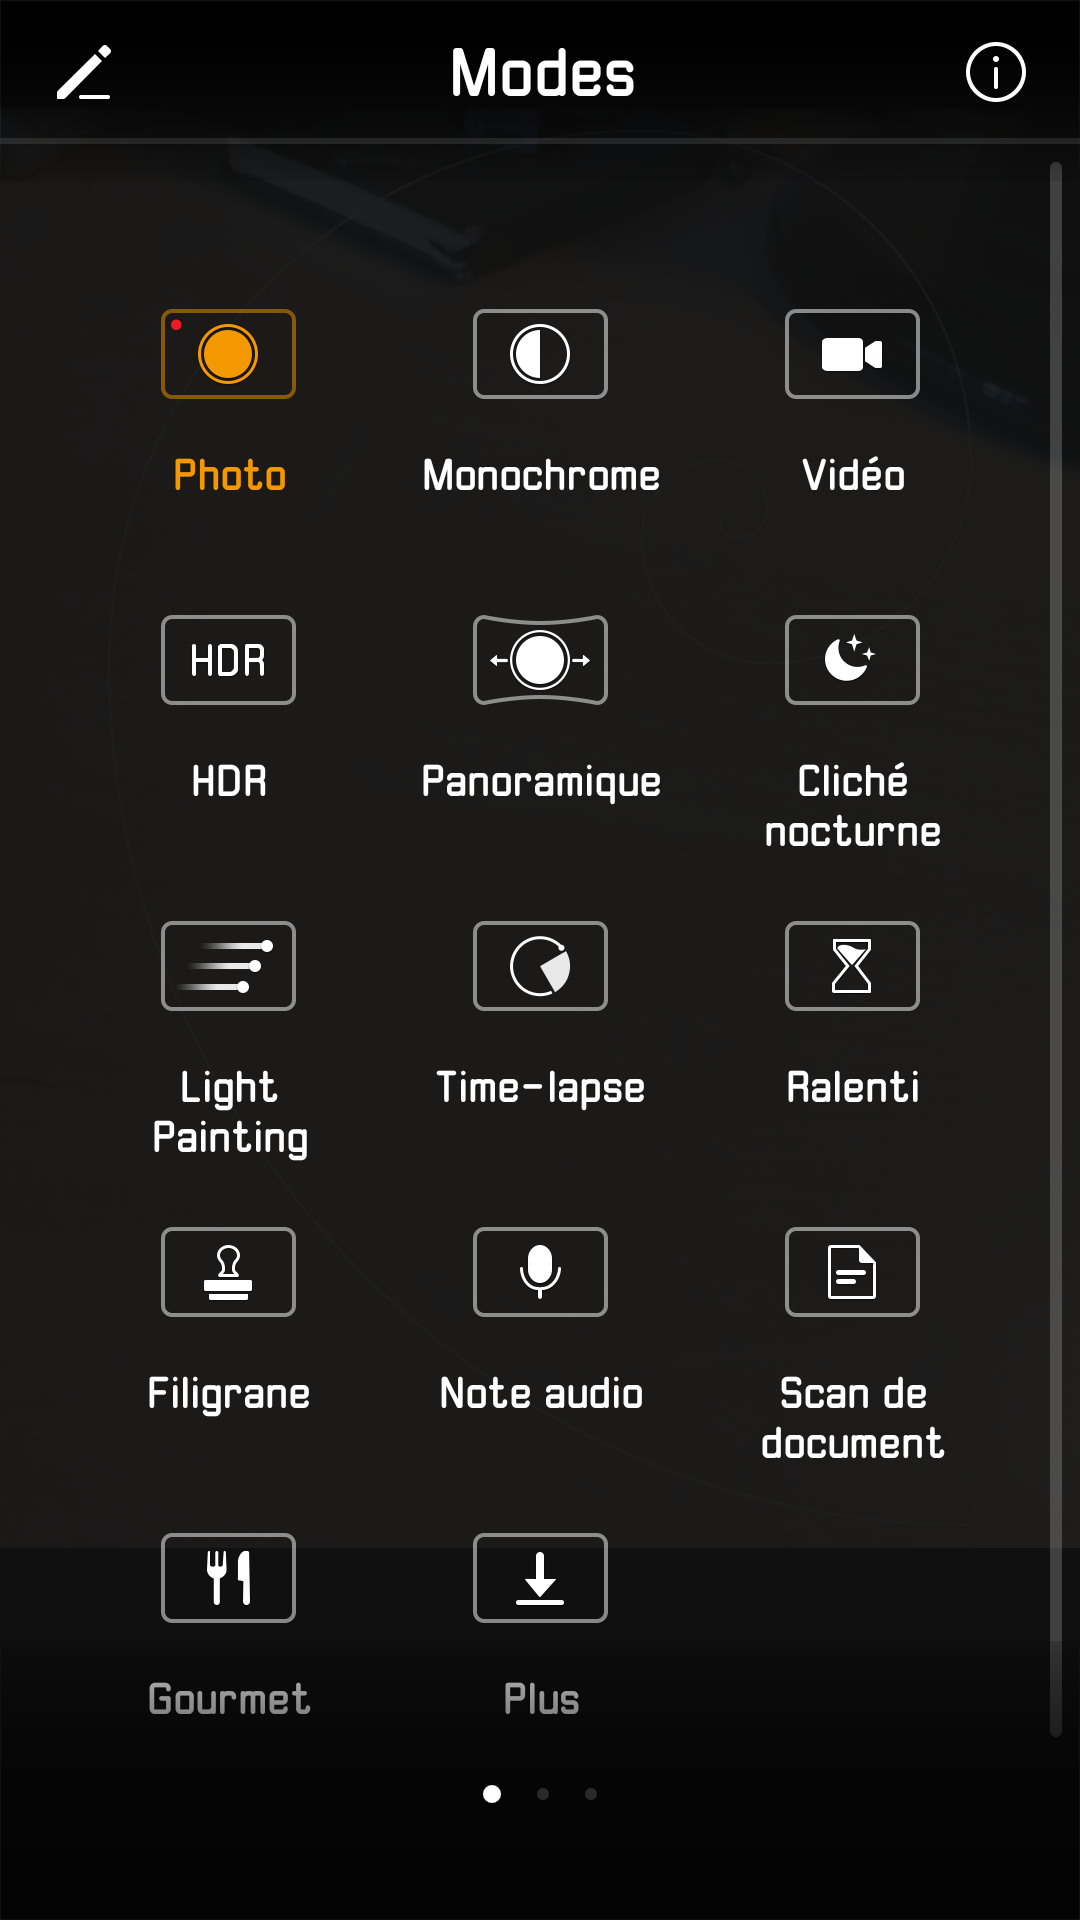 Huawei P10 photo mode